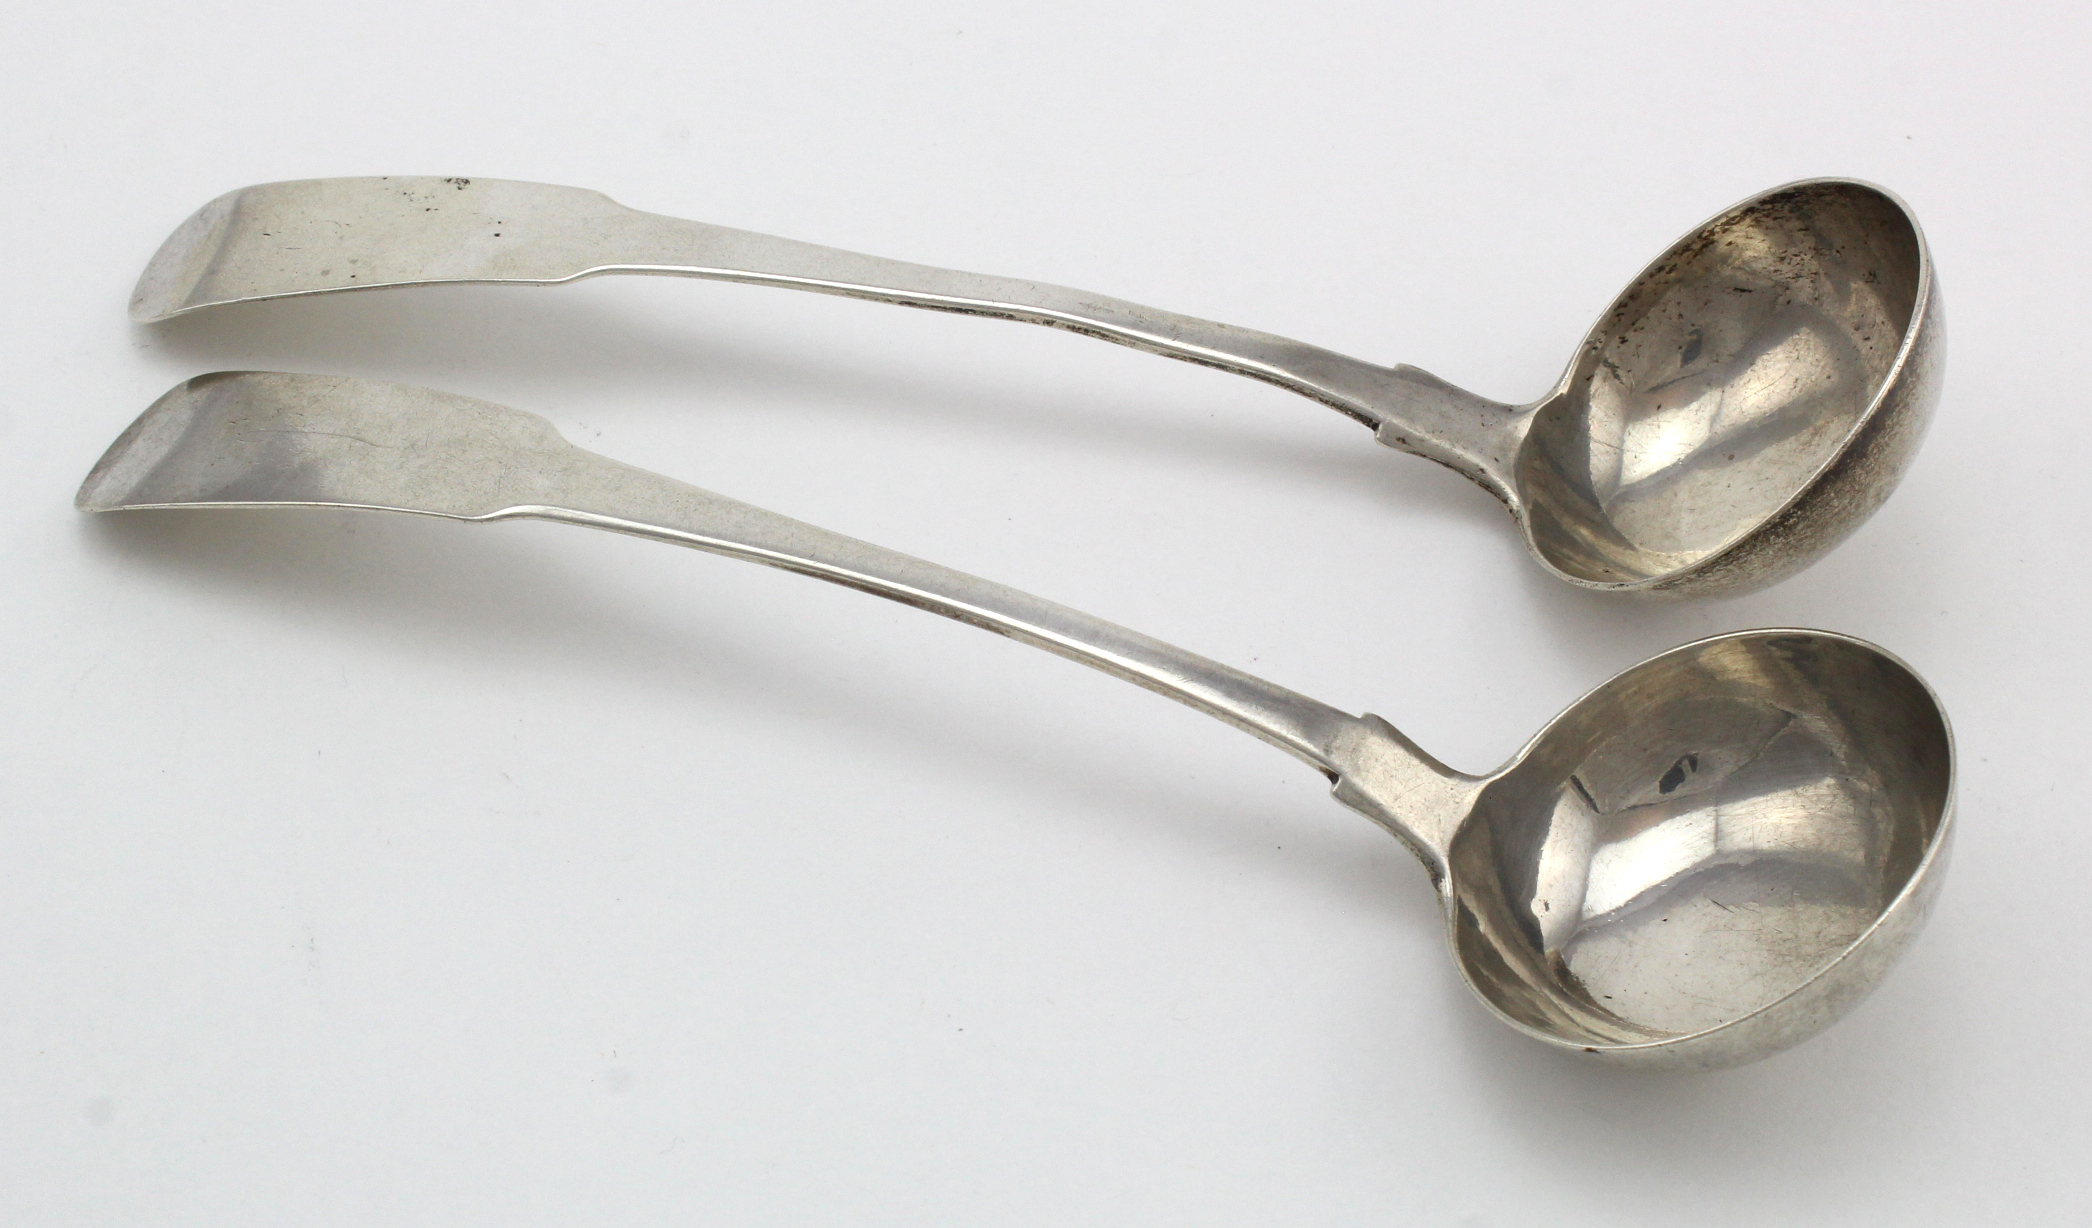 Pair of Scottish silver fiddle pattern toddy ladles- hallmarked J.D. (Jas. Downie) Glasgow, 1820.